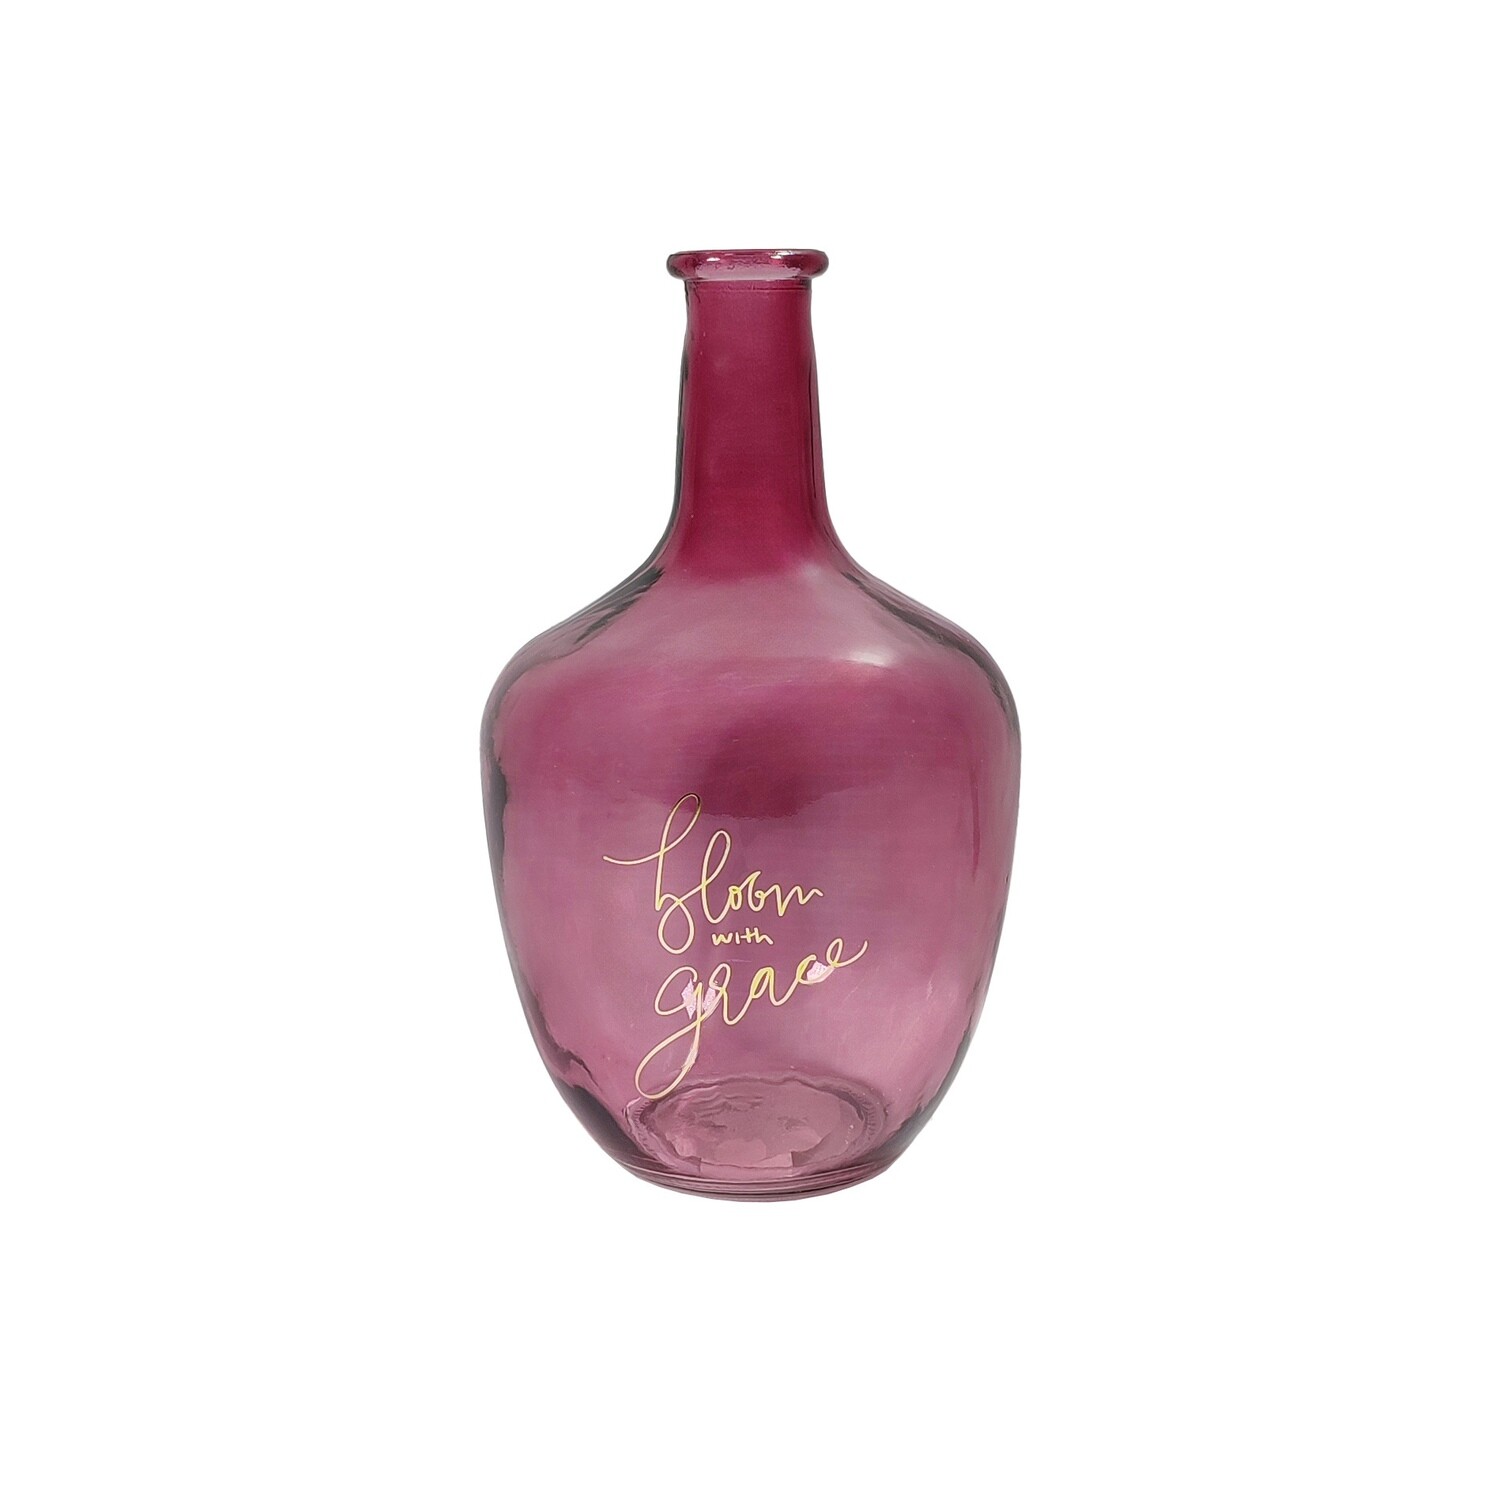 Glass Bottle 15x26cm - Dark Pink